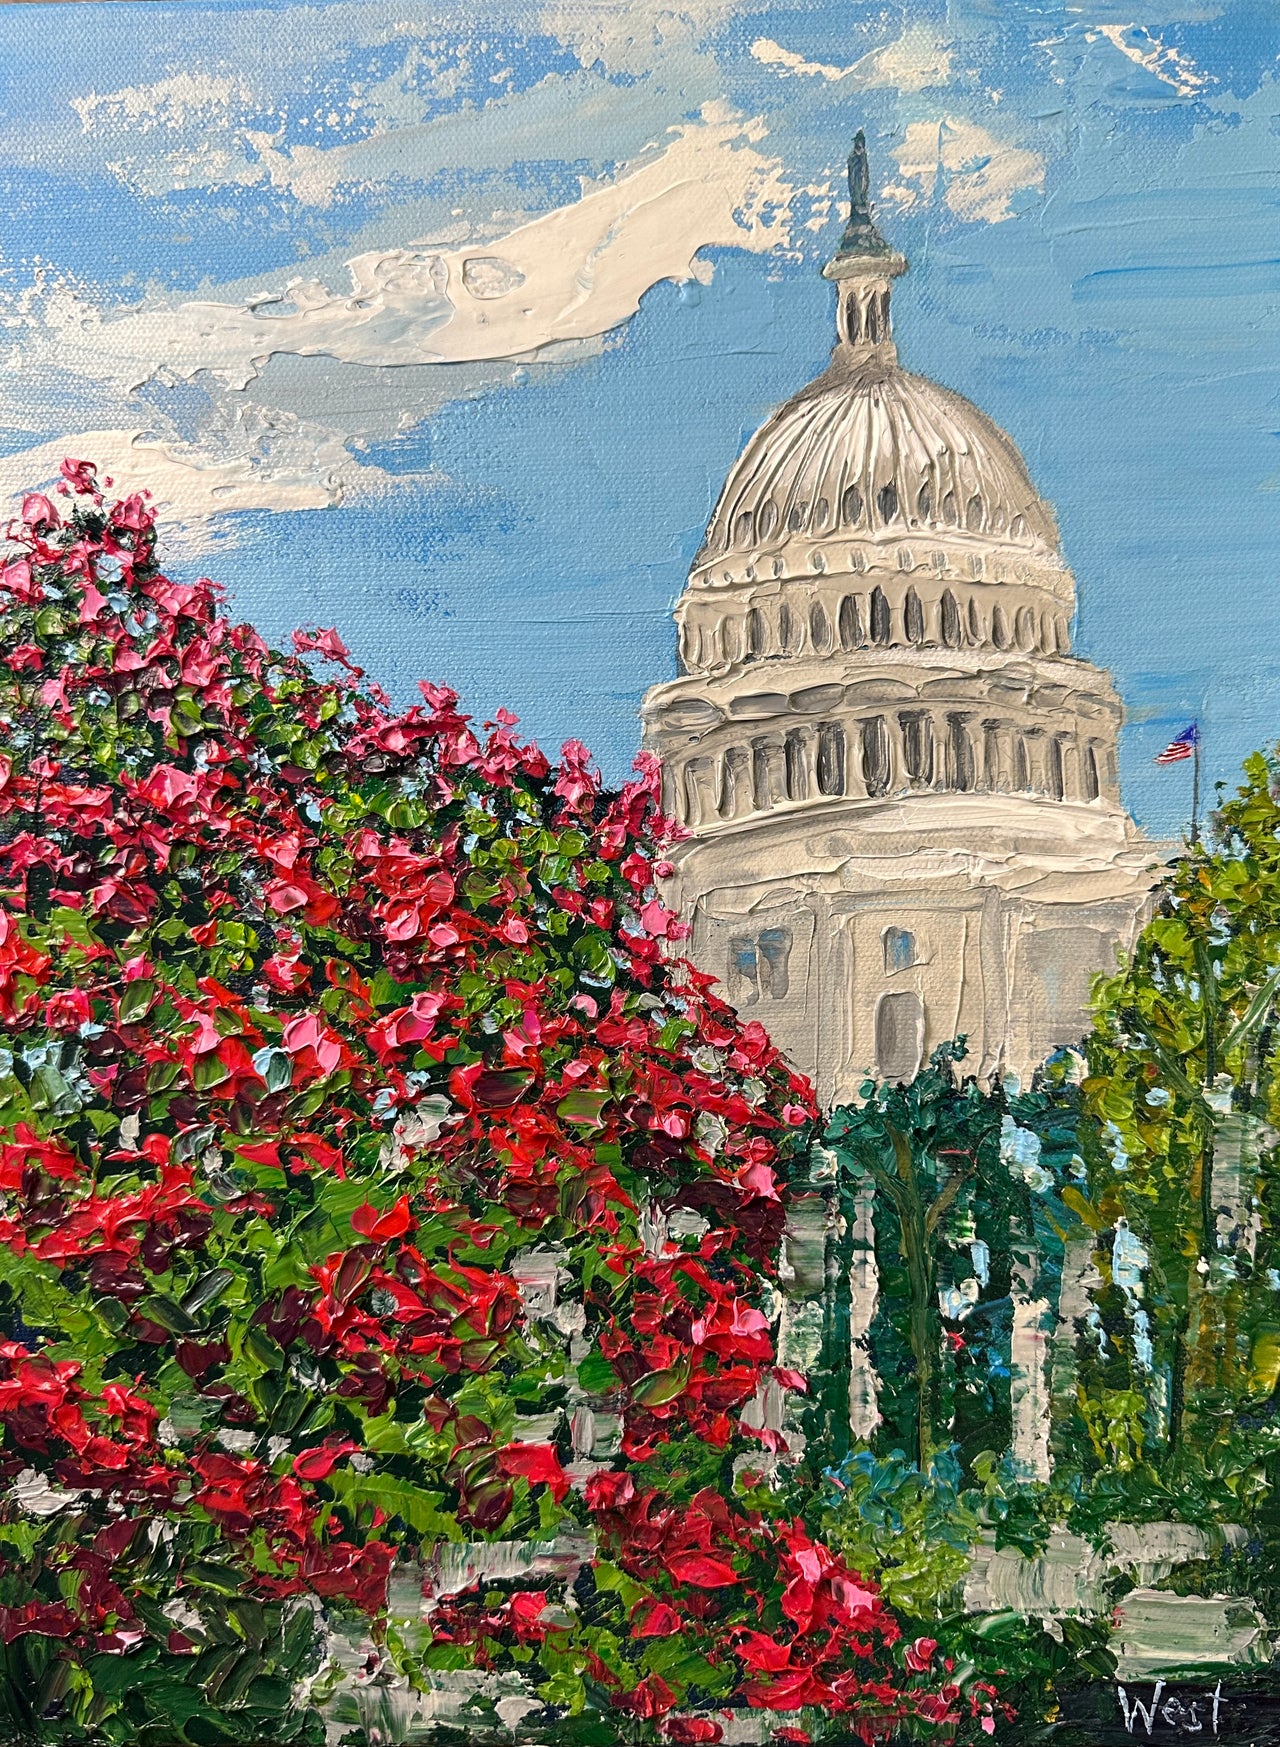 "Capitol Blooms"- Artwork